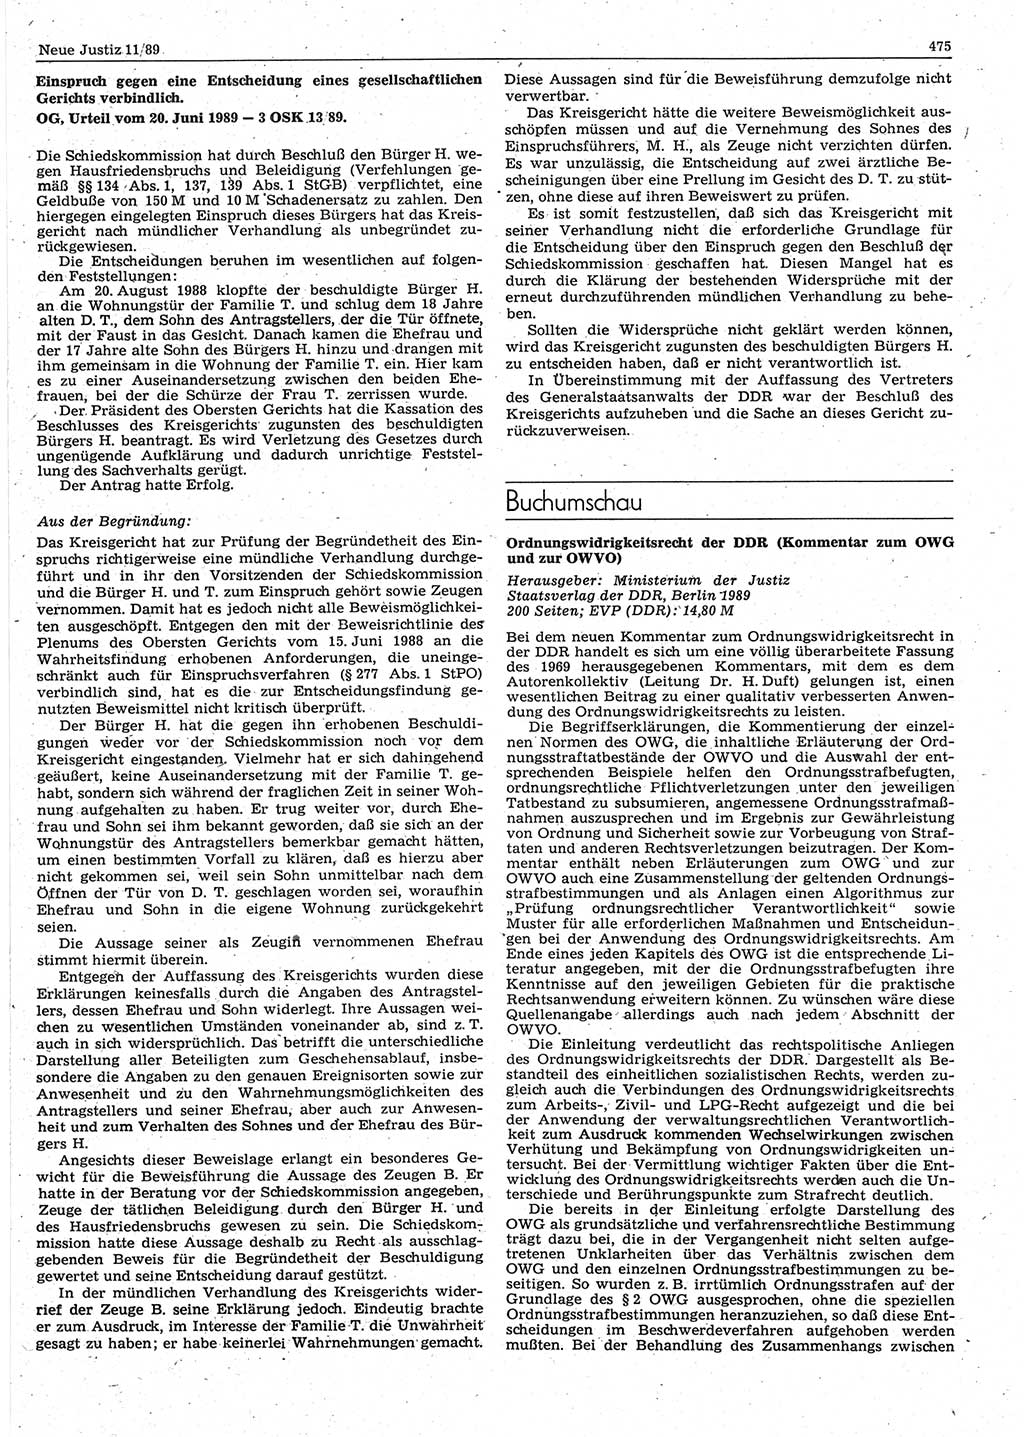 Neue Justiz (NJ), Zeitschrift für sozialistisches Recht und Gesetzlichkeit [Deutsche Demokratische Republik (DDR)], 43. Jahrgang 1989, Seite 475 (NJ DDR 1989, S. 475)